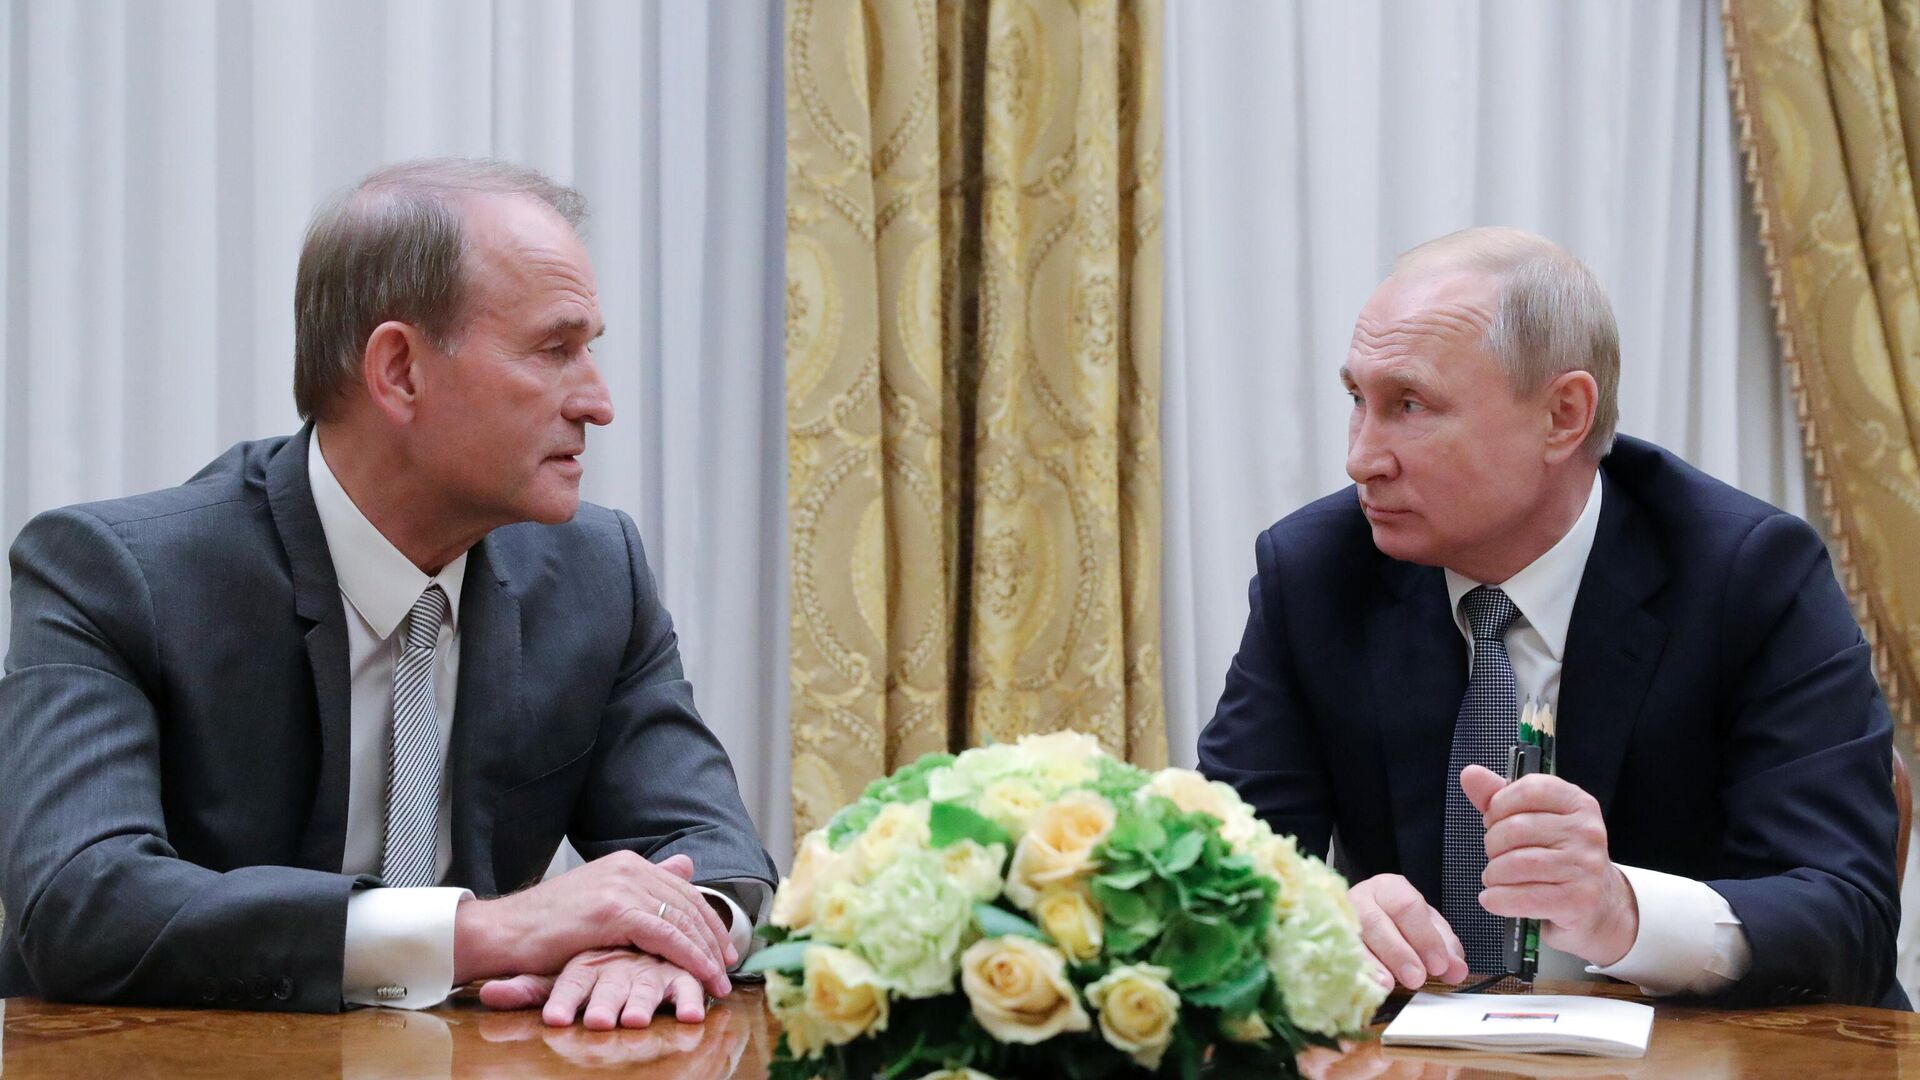 Chính trị gia Ukraina Viktor Medvedchuk và Tổng thống Nga Vladimir Putin. Ngày 18 tháng 7 năm 2019. - Sputnik Việt Nam, 1920, 17.04.2022